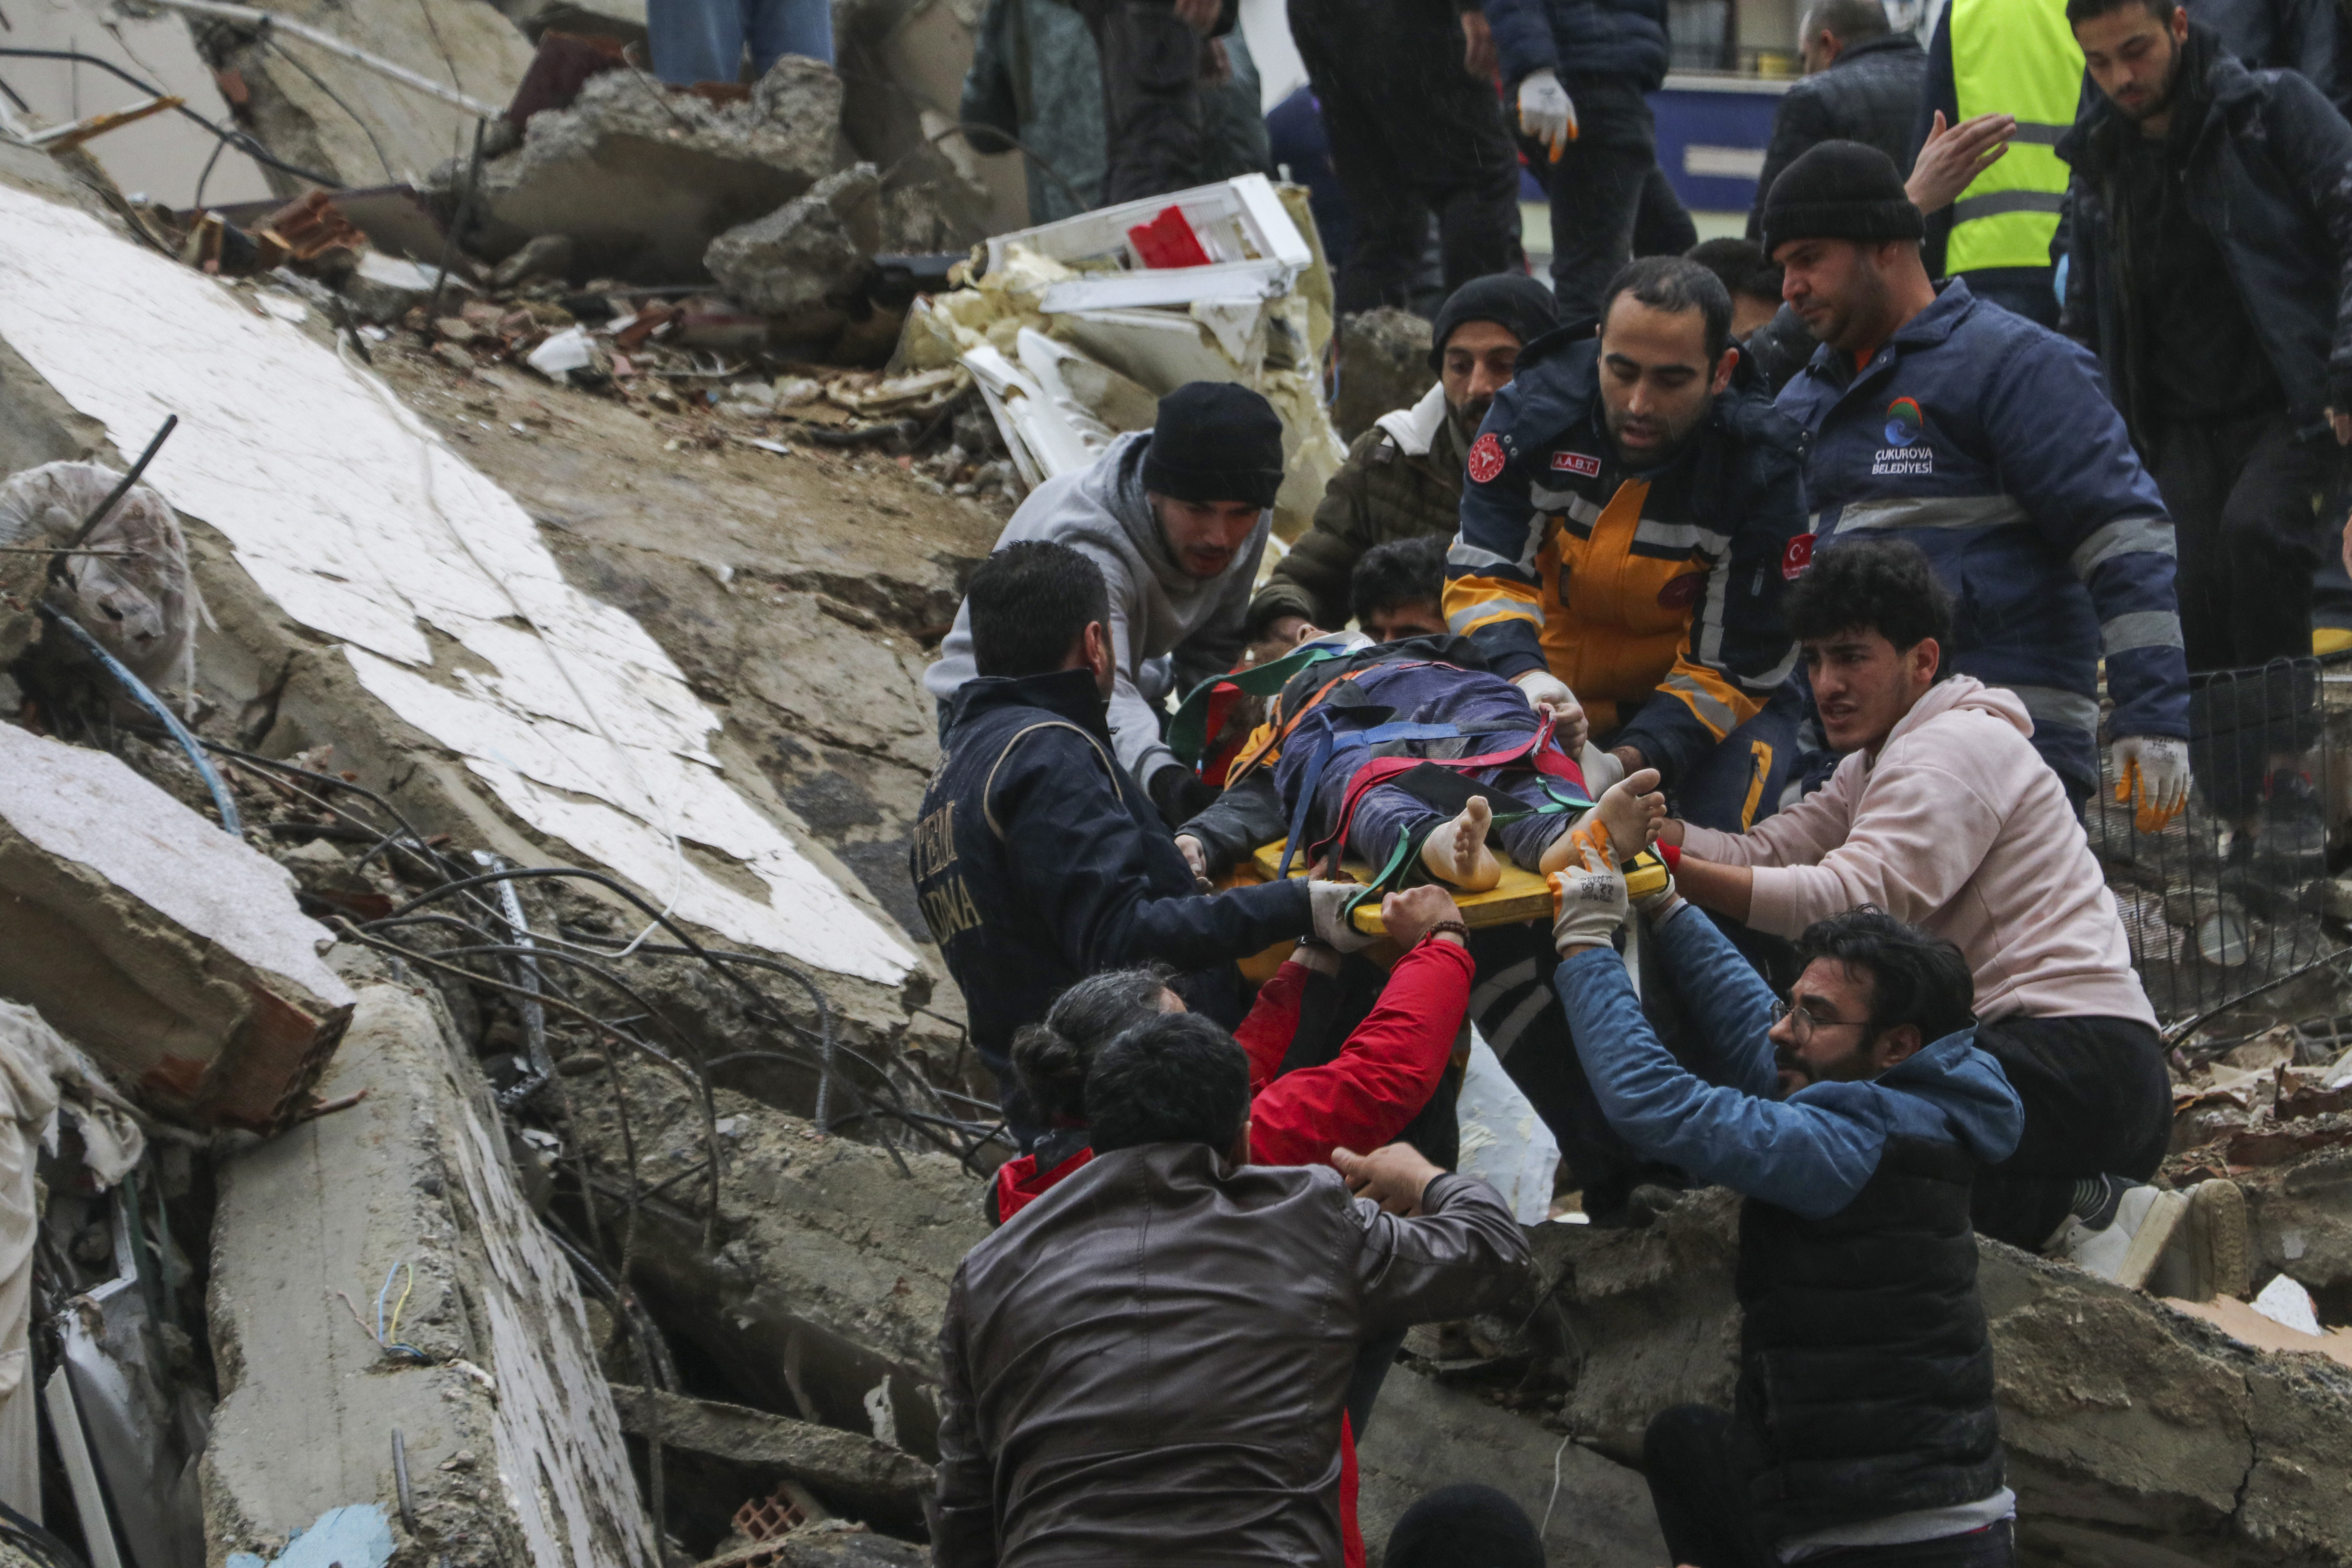 Gente y equipos de rescatistas trasladan a una persona en camilla desde un edificio derruido en Adana, Turquía, el lunes 6 de febrero de 2023. (IHA agency via AP)